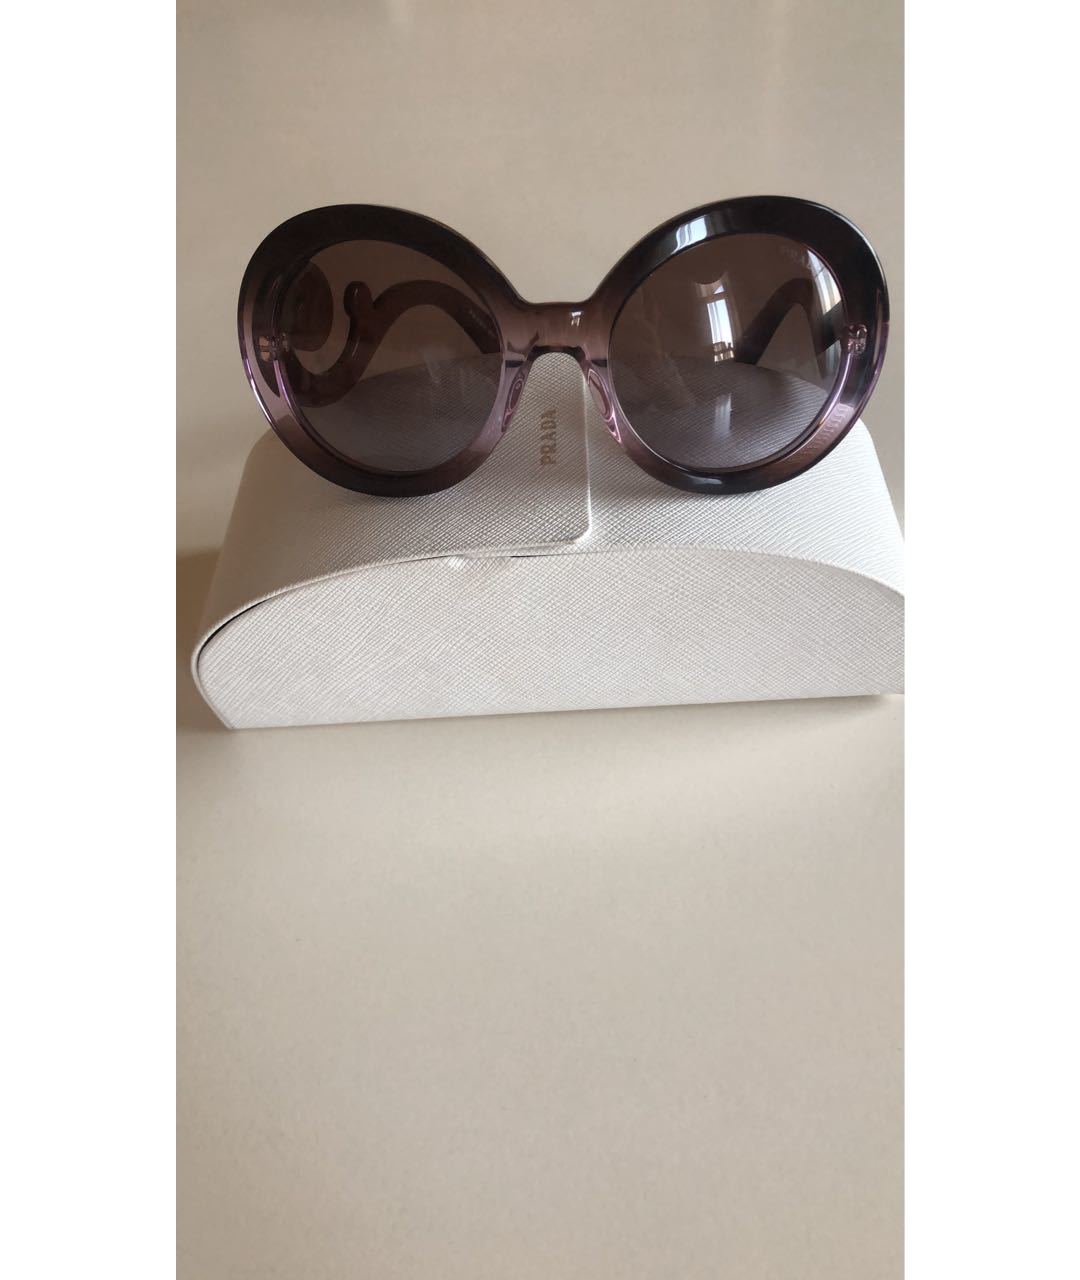 PRADA Фиолетовые пластиковые солнцезащитные очки, фото 3